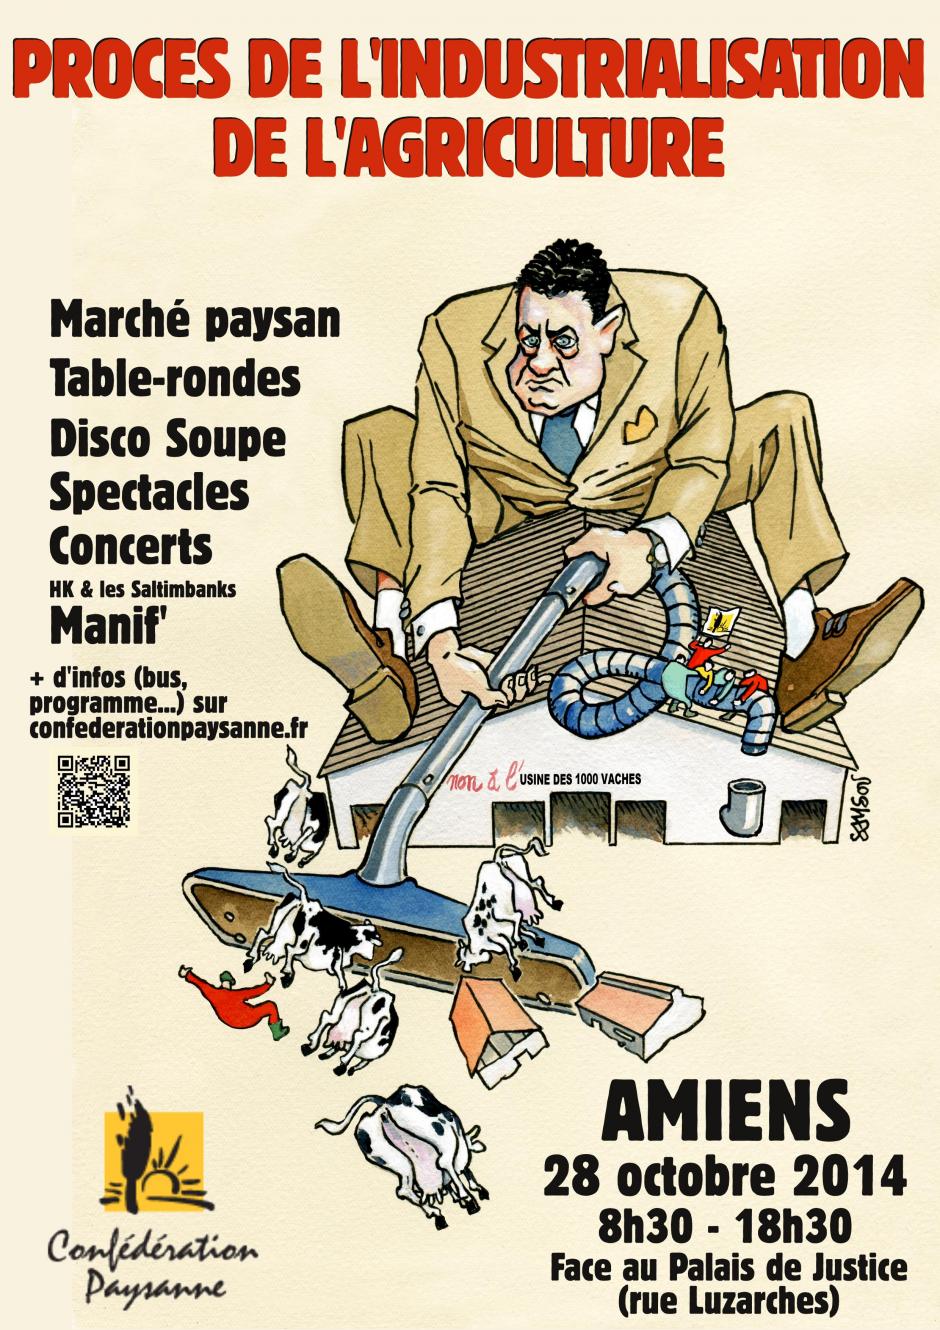 28 octobre, Amiens - Procès de l'industrialisation de l'agriculture